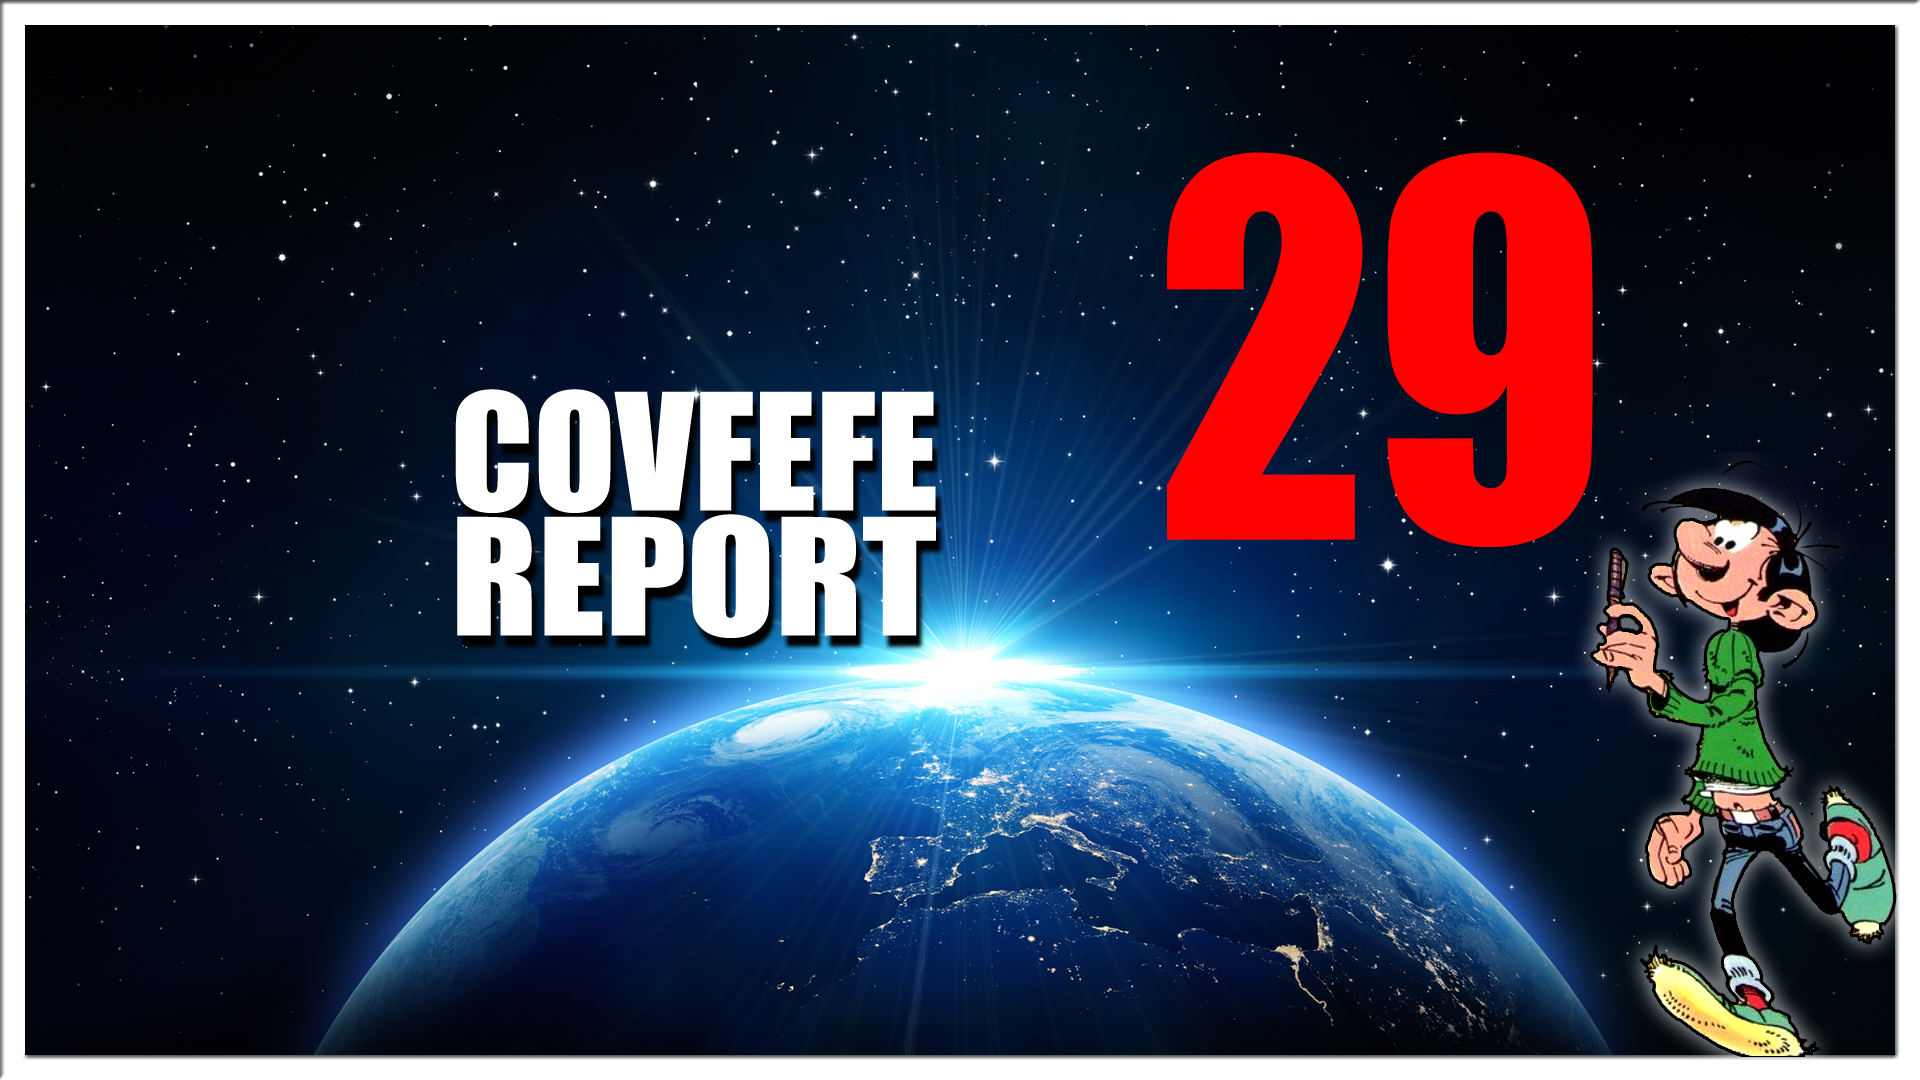 Covfefe Report 29. Indictments coming, Cyberaanvallen, Geen 130 meer